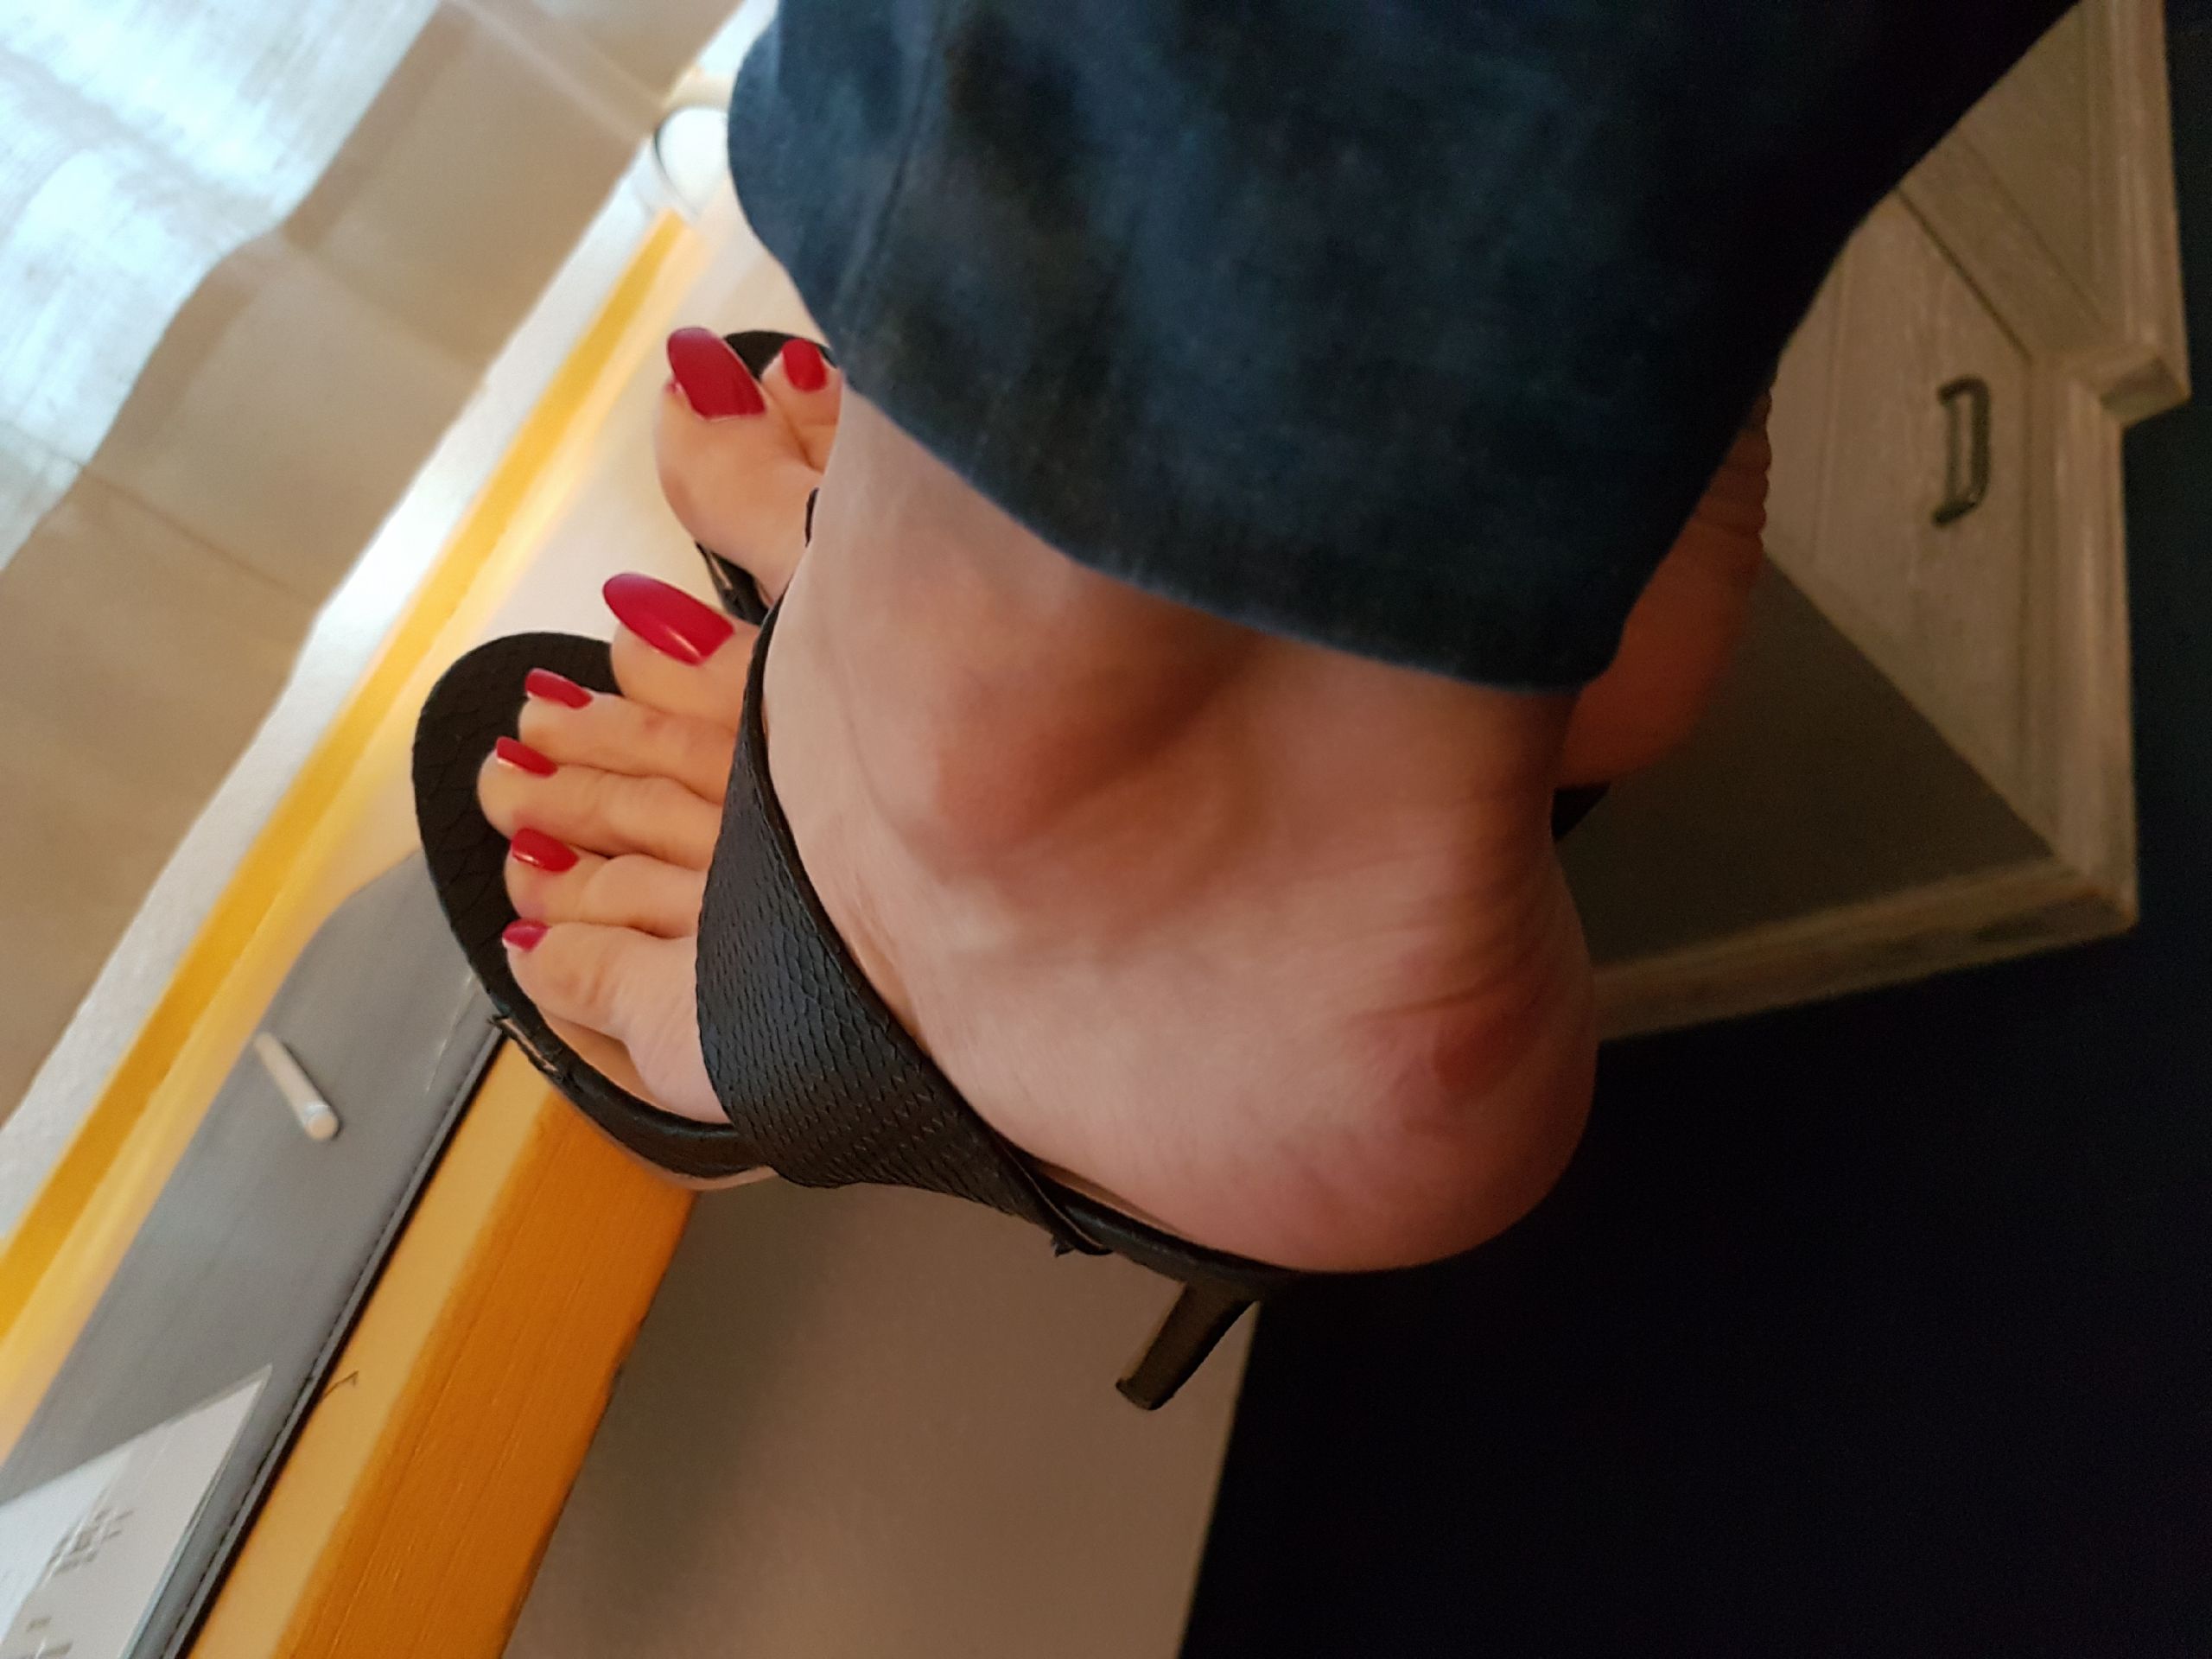 yolas naked feet in heels